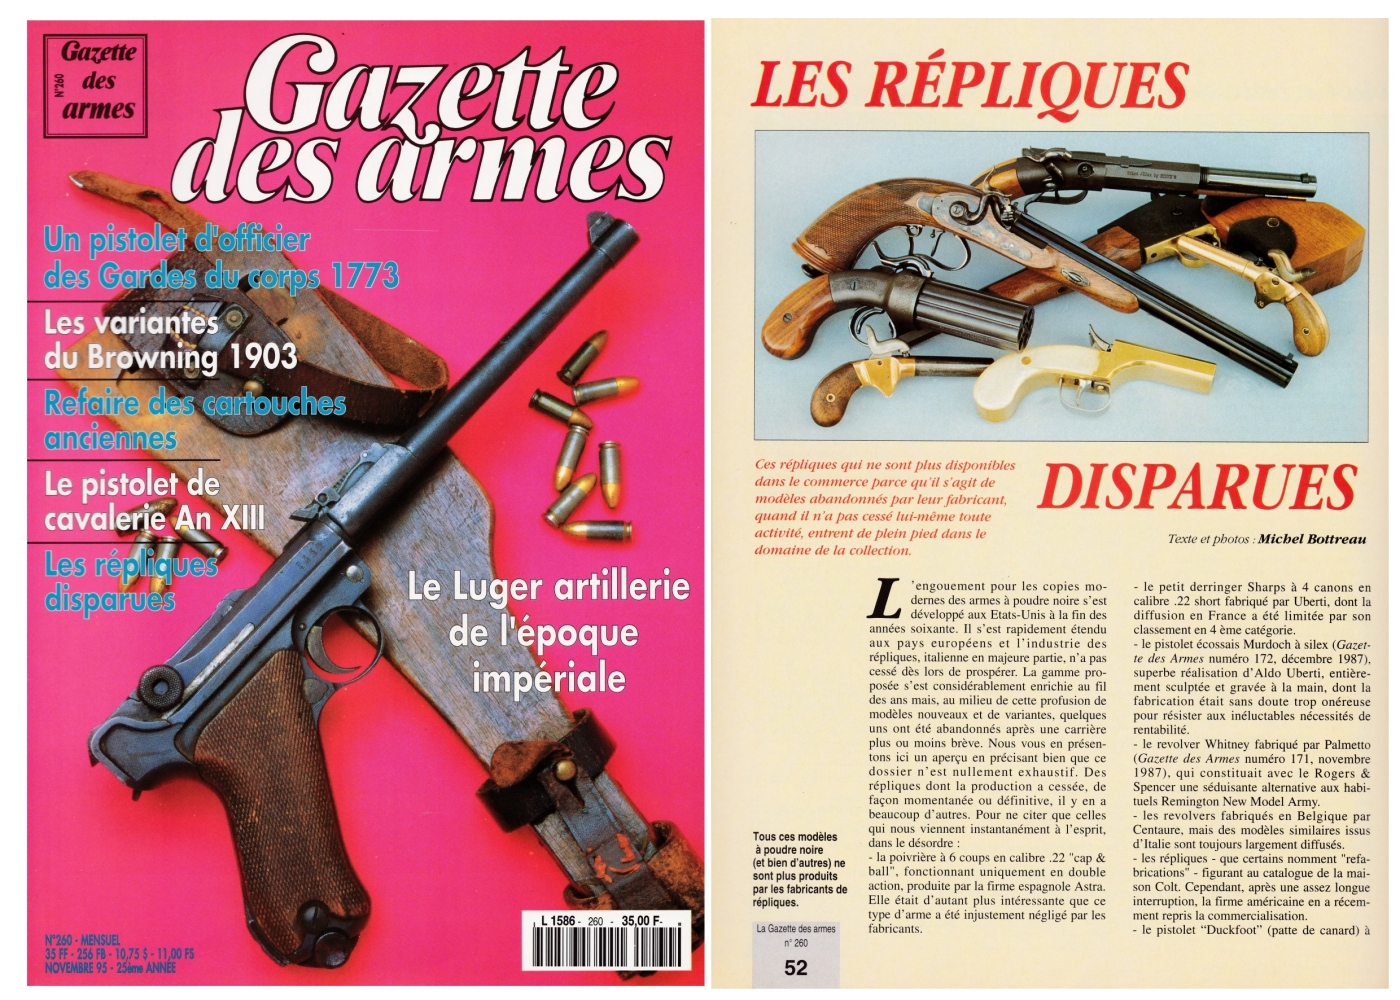 Cet article consacré aux "Répliques disparues" a été publié sur 6 pages dans le magazine Gazette des Armes n°260 (novembre 1995).